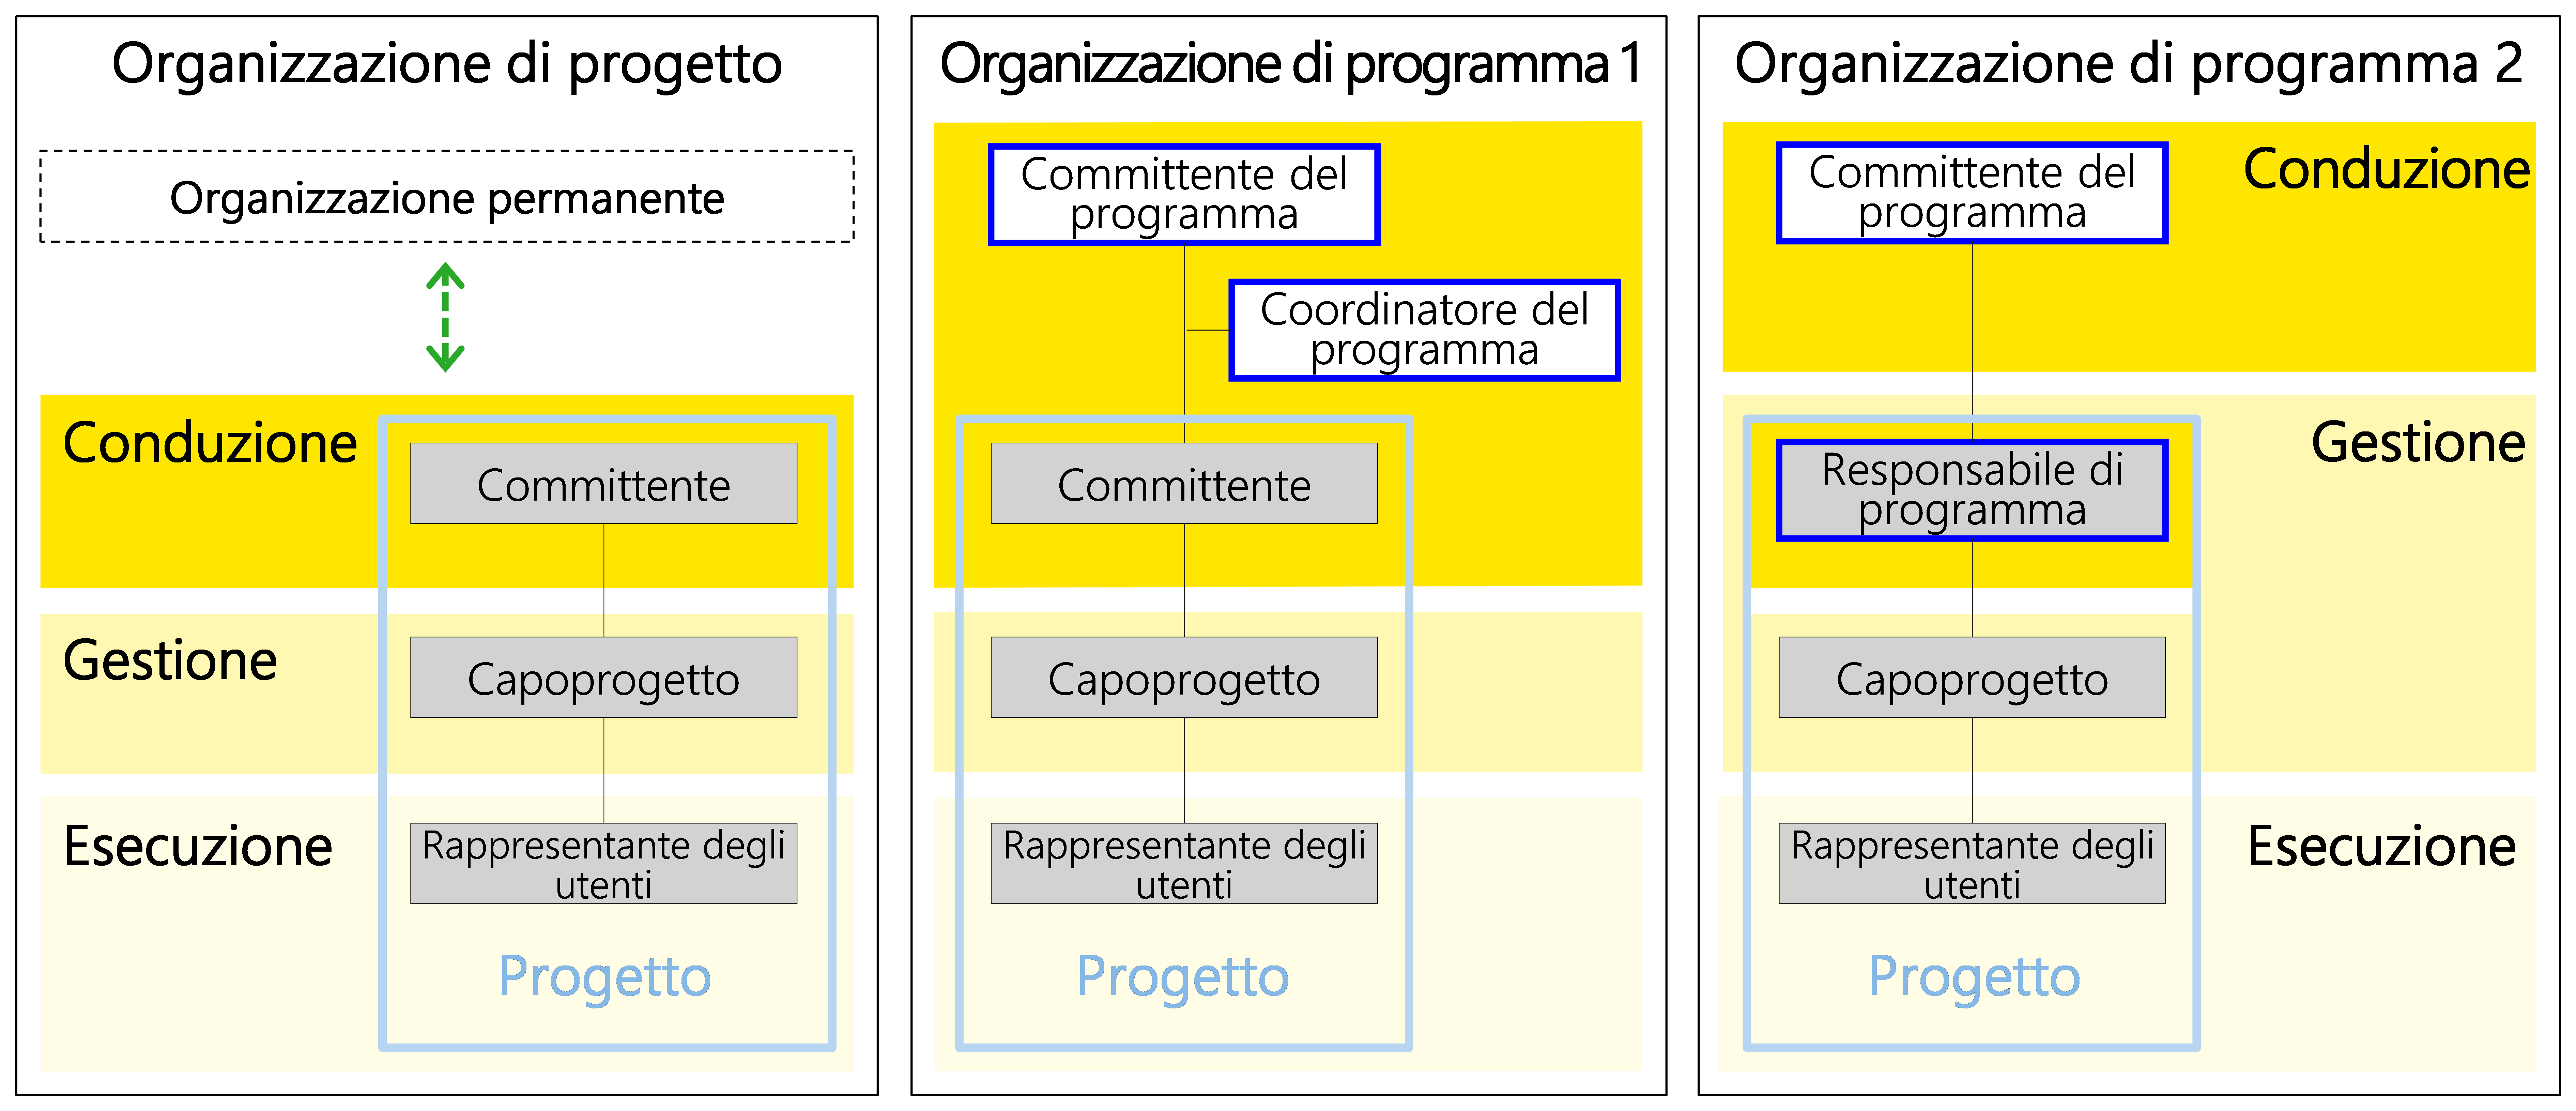 Figura 29: tre possibili varianti dell'organizzazione di progetto